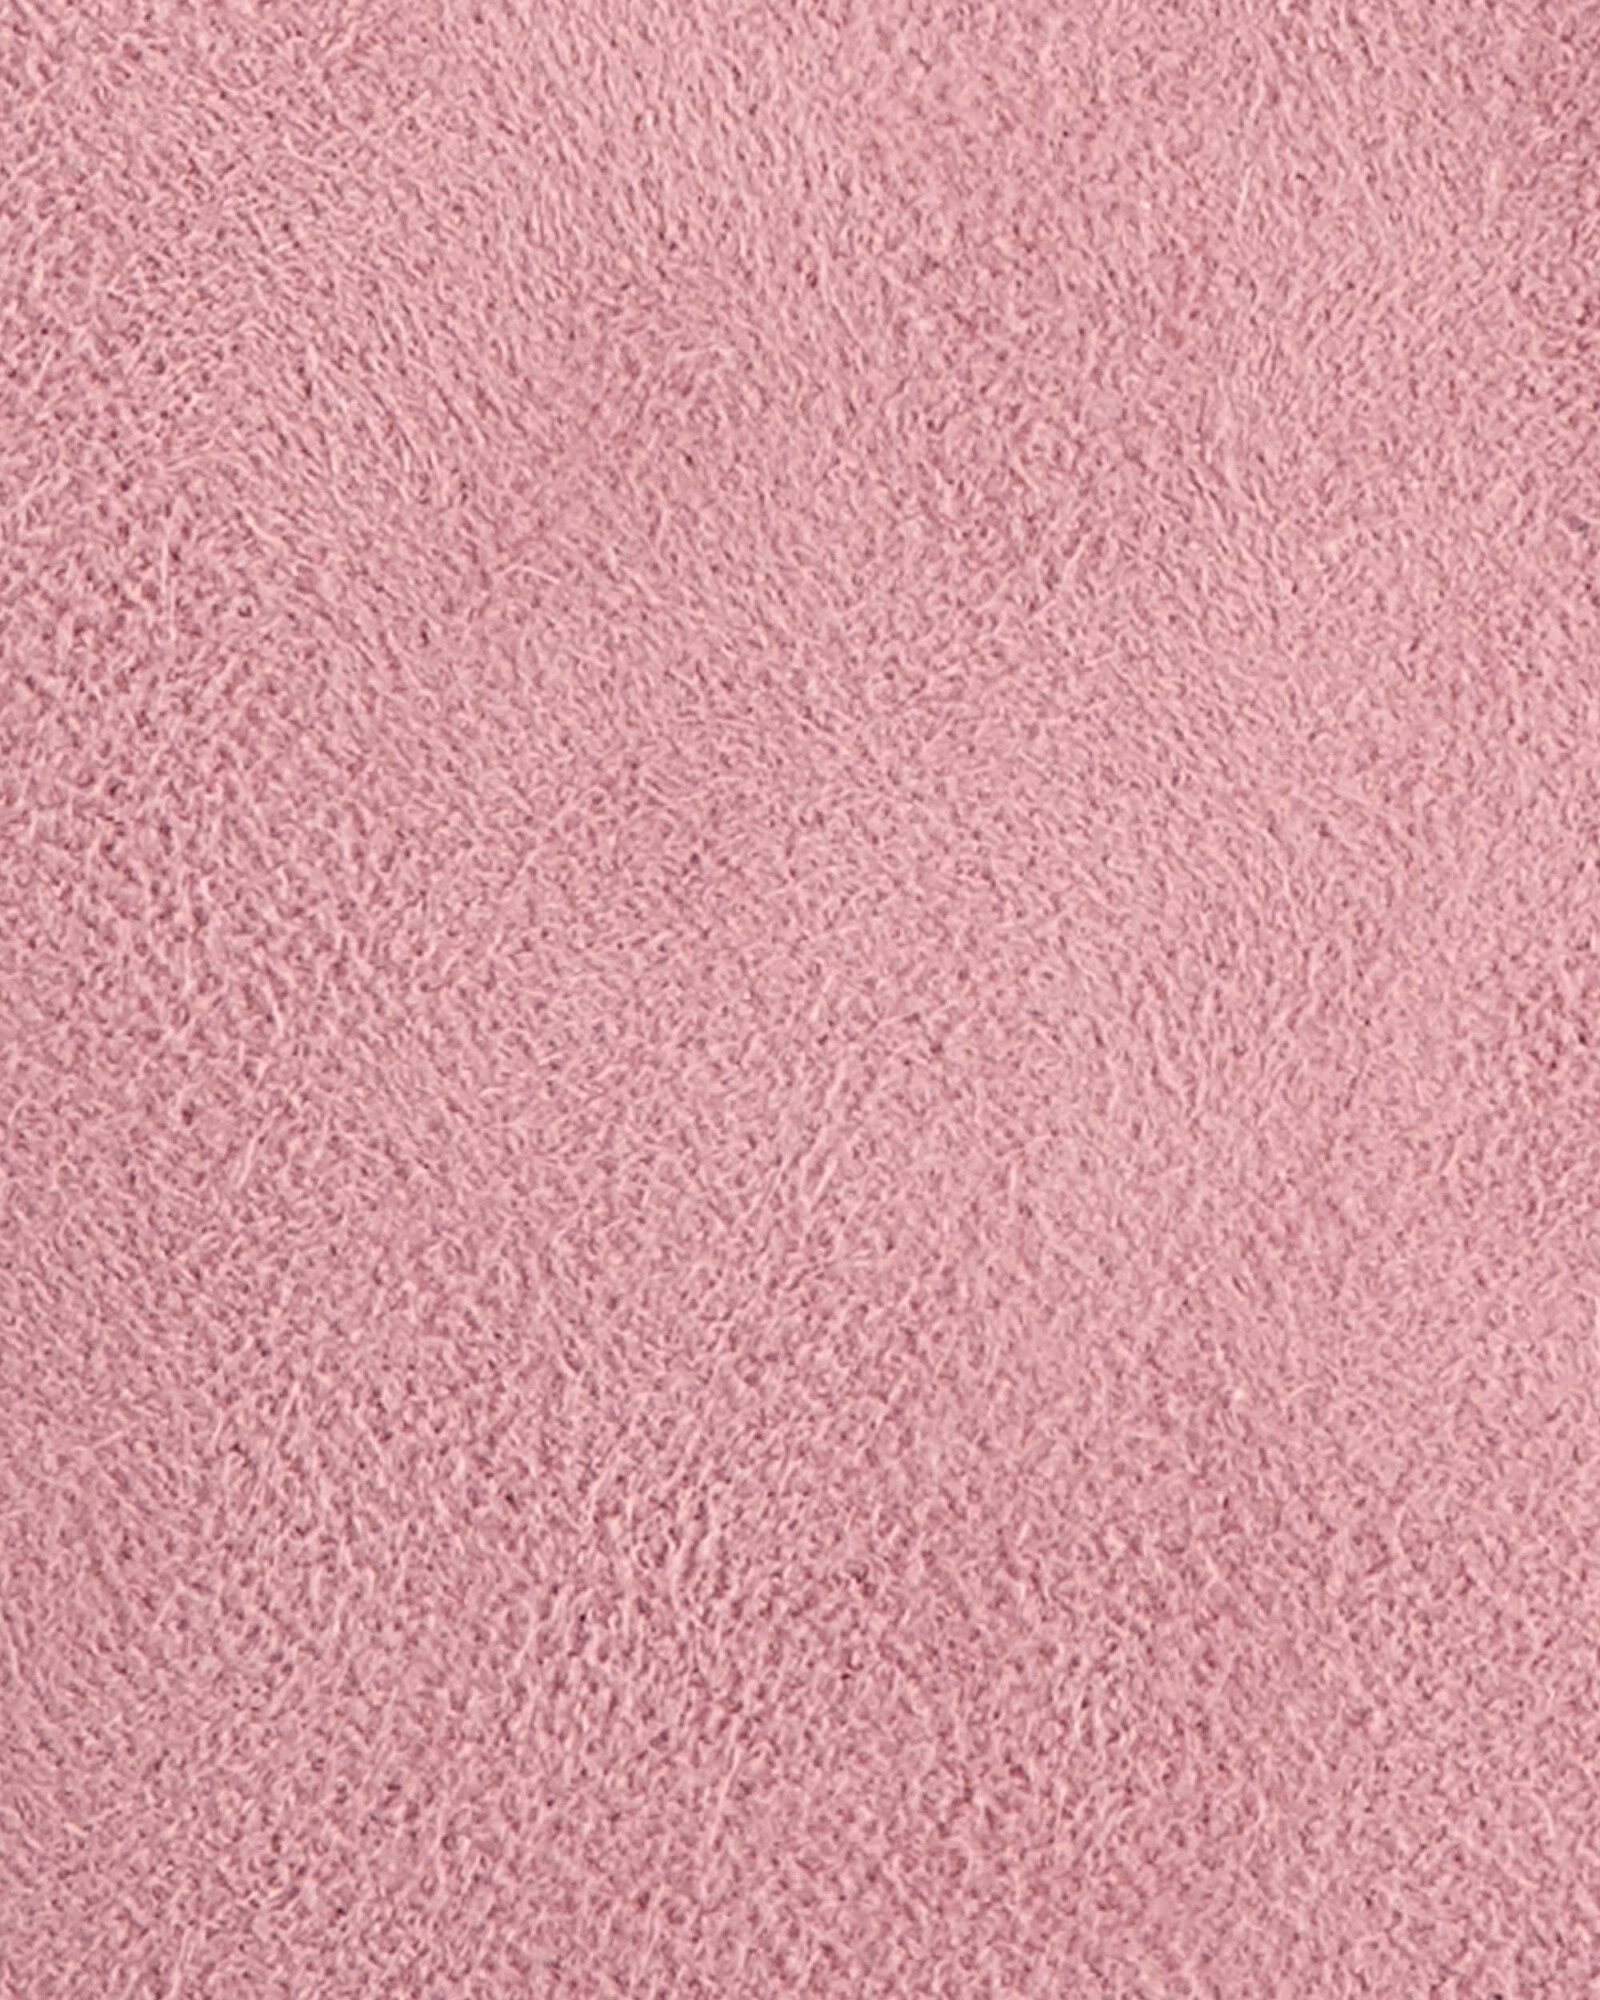 Campera de ante sintético y sherpa, rosada Sin color